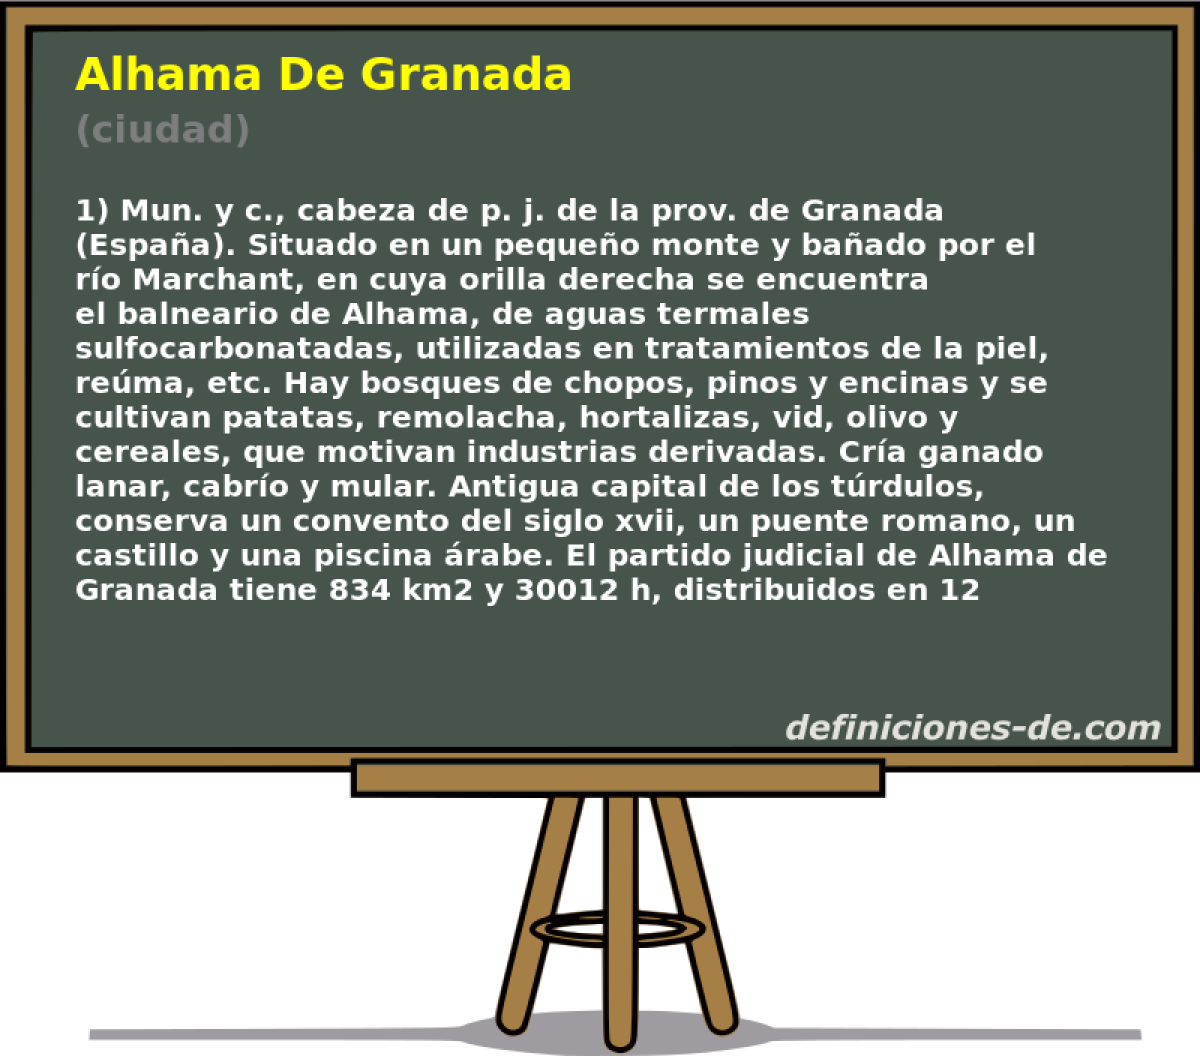 Alhama De Granada (ciudad)